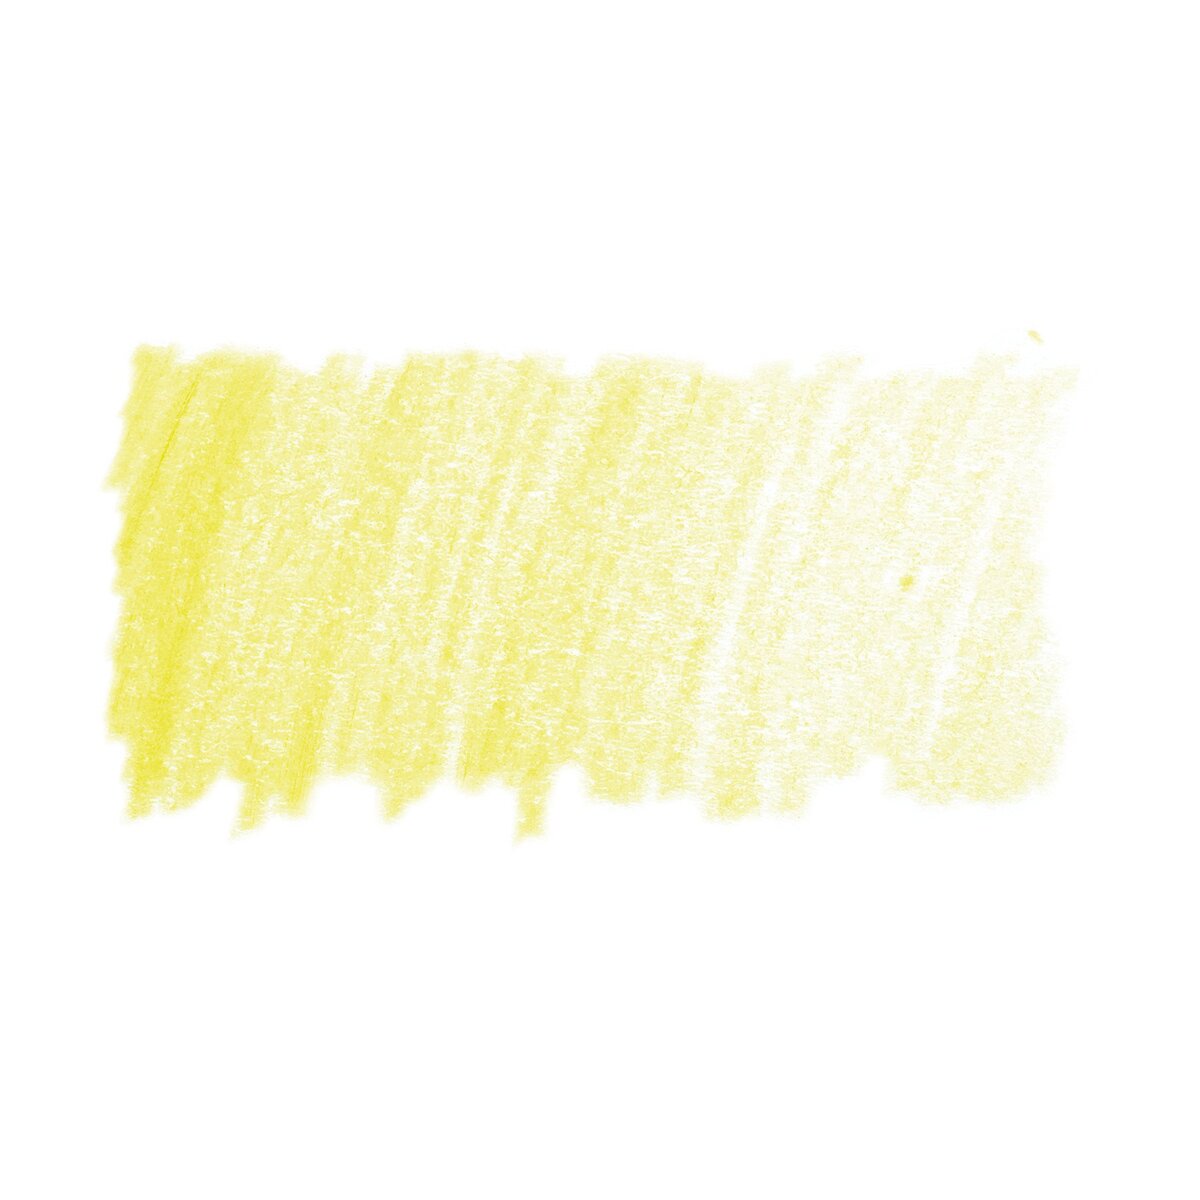 205 cadmium yellow lemon  